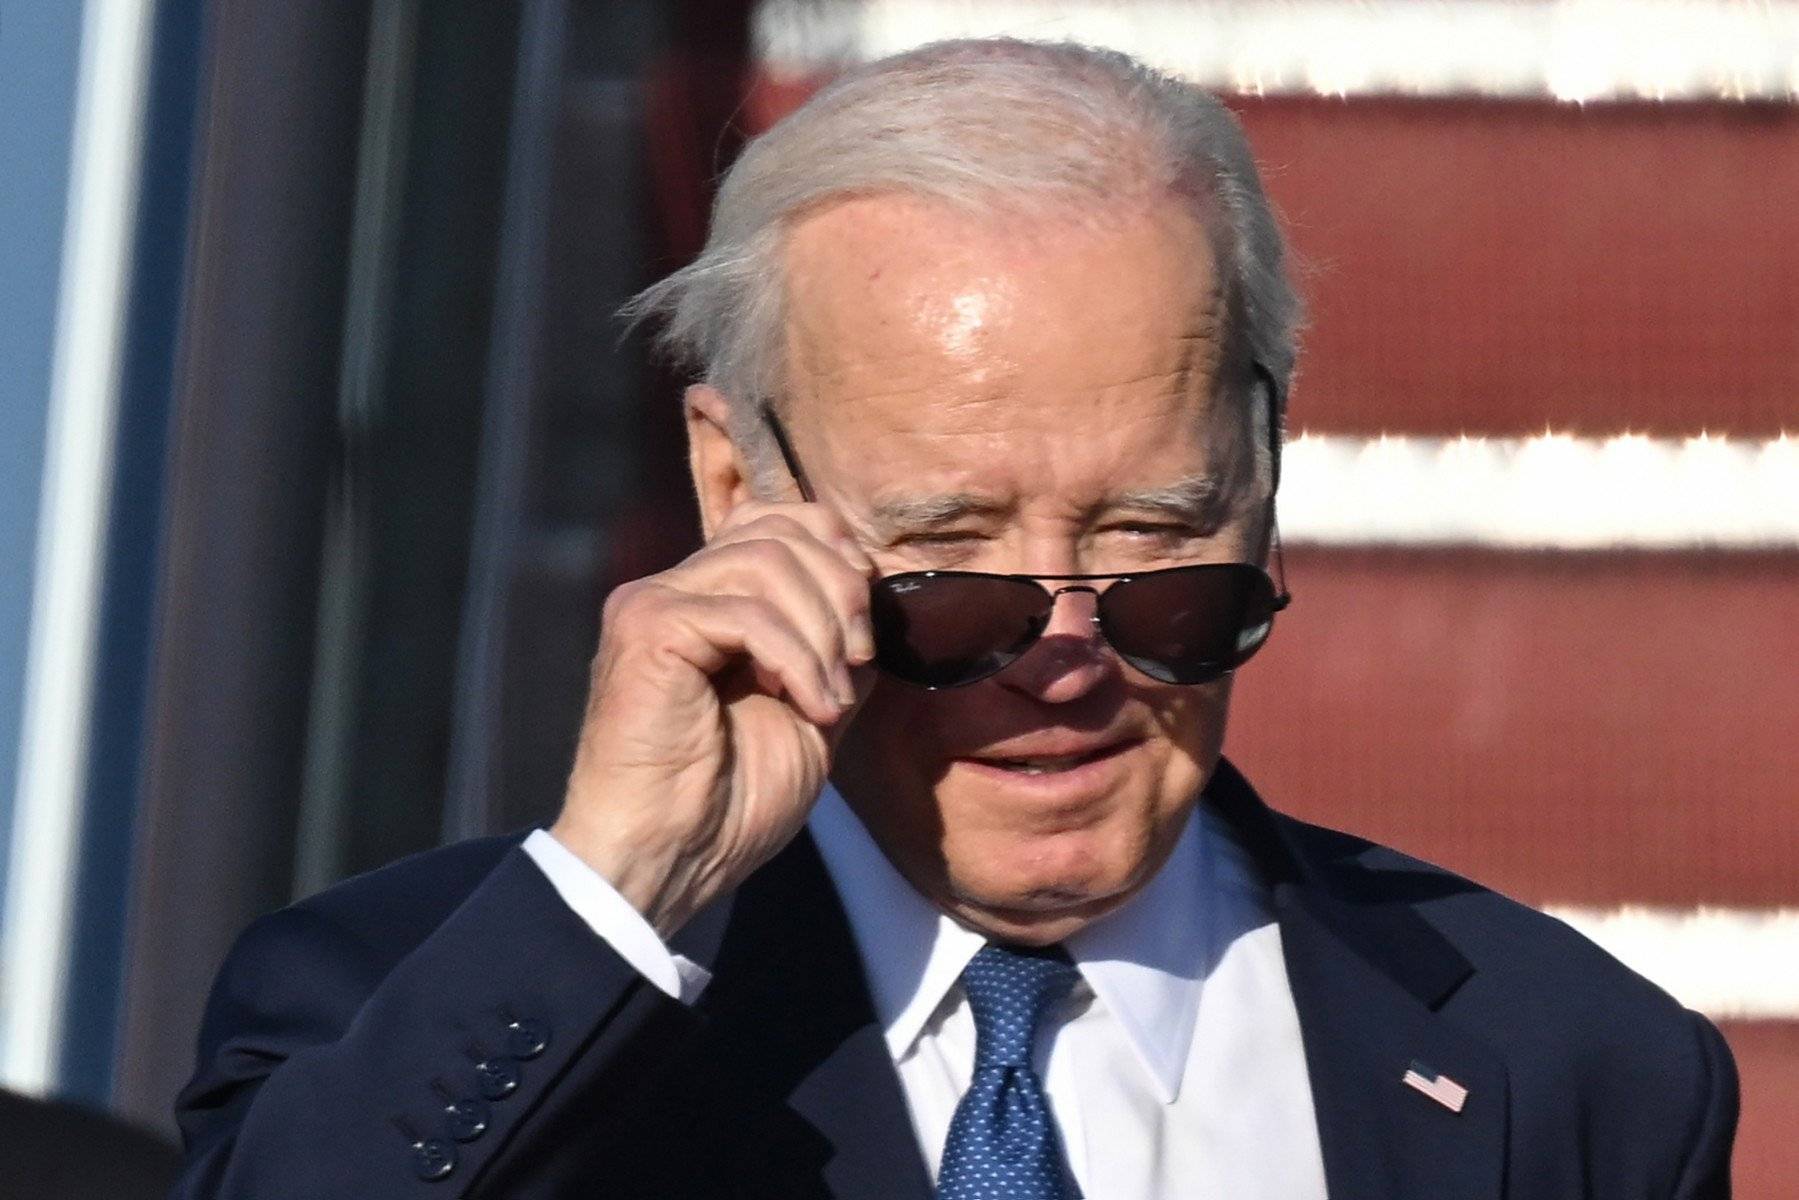 Starszy mężczyzna patrzy ponad okularami słonecznymi, prezydent Biden